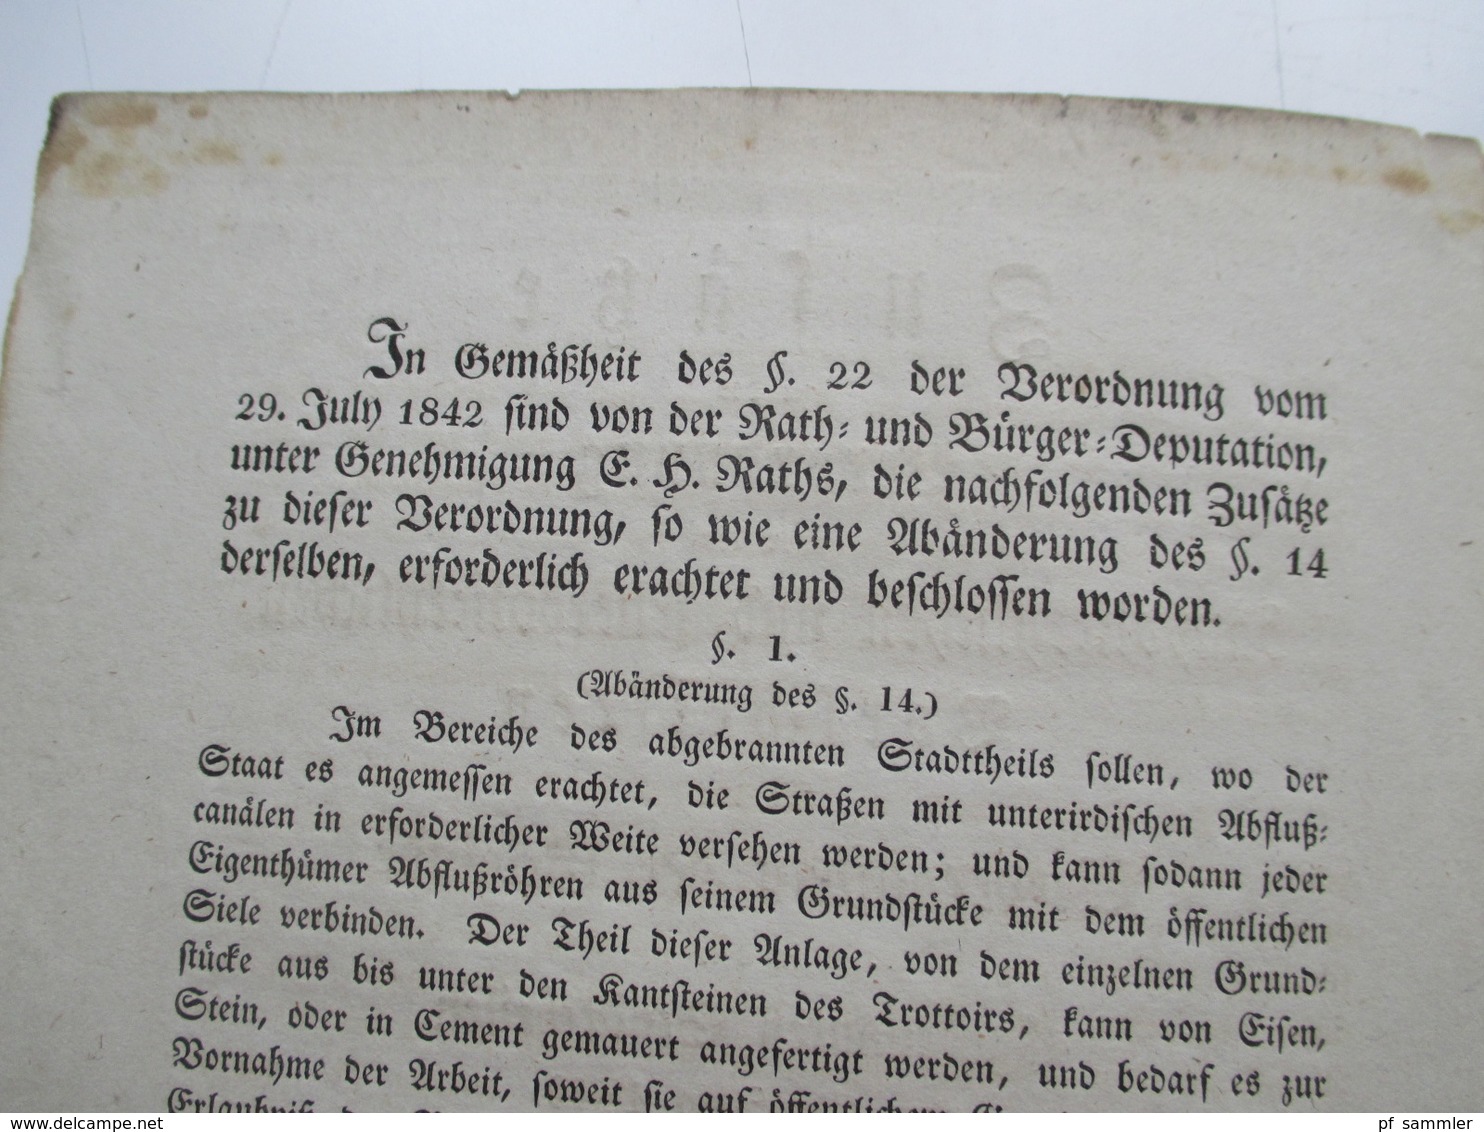 Original Dokument Zusätze Zur Verordnung Zum Wiederaufbau Gebäude In Den Abgebrannten Stadtteilen Hamburger Brand 1842 - Wetten & Decreten